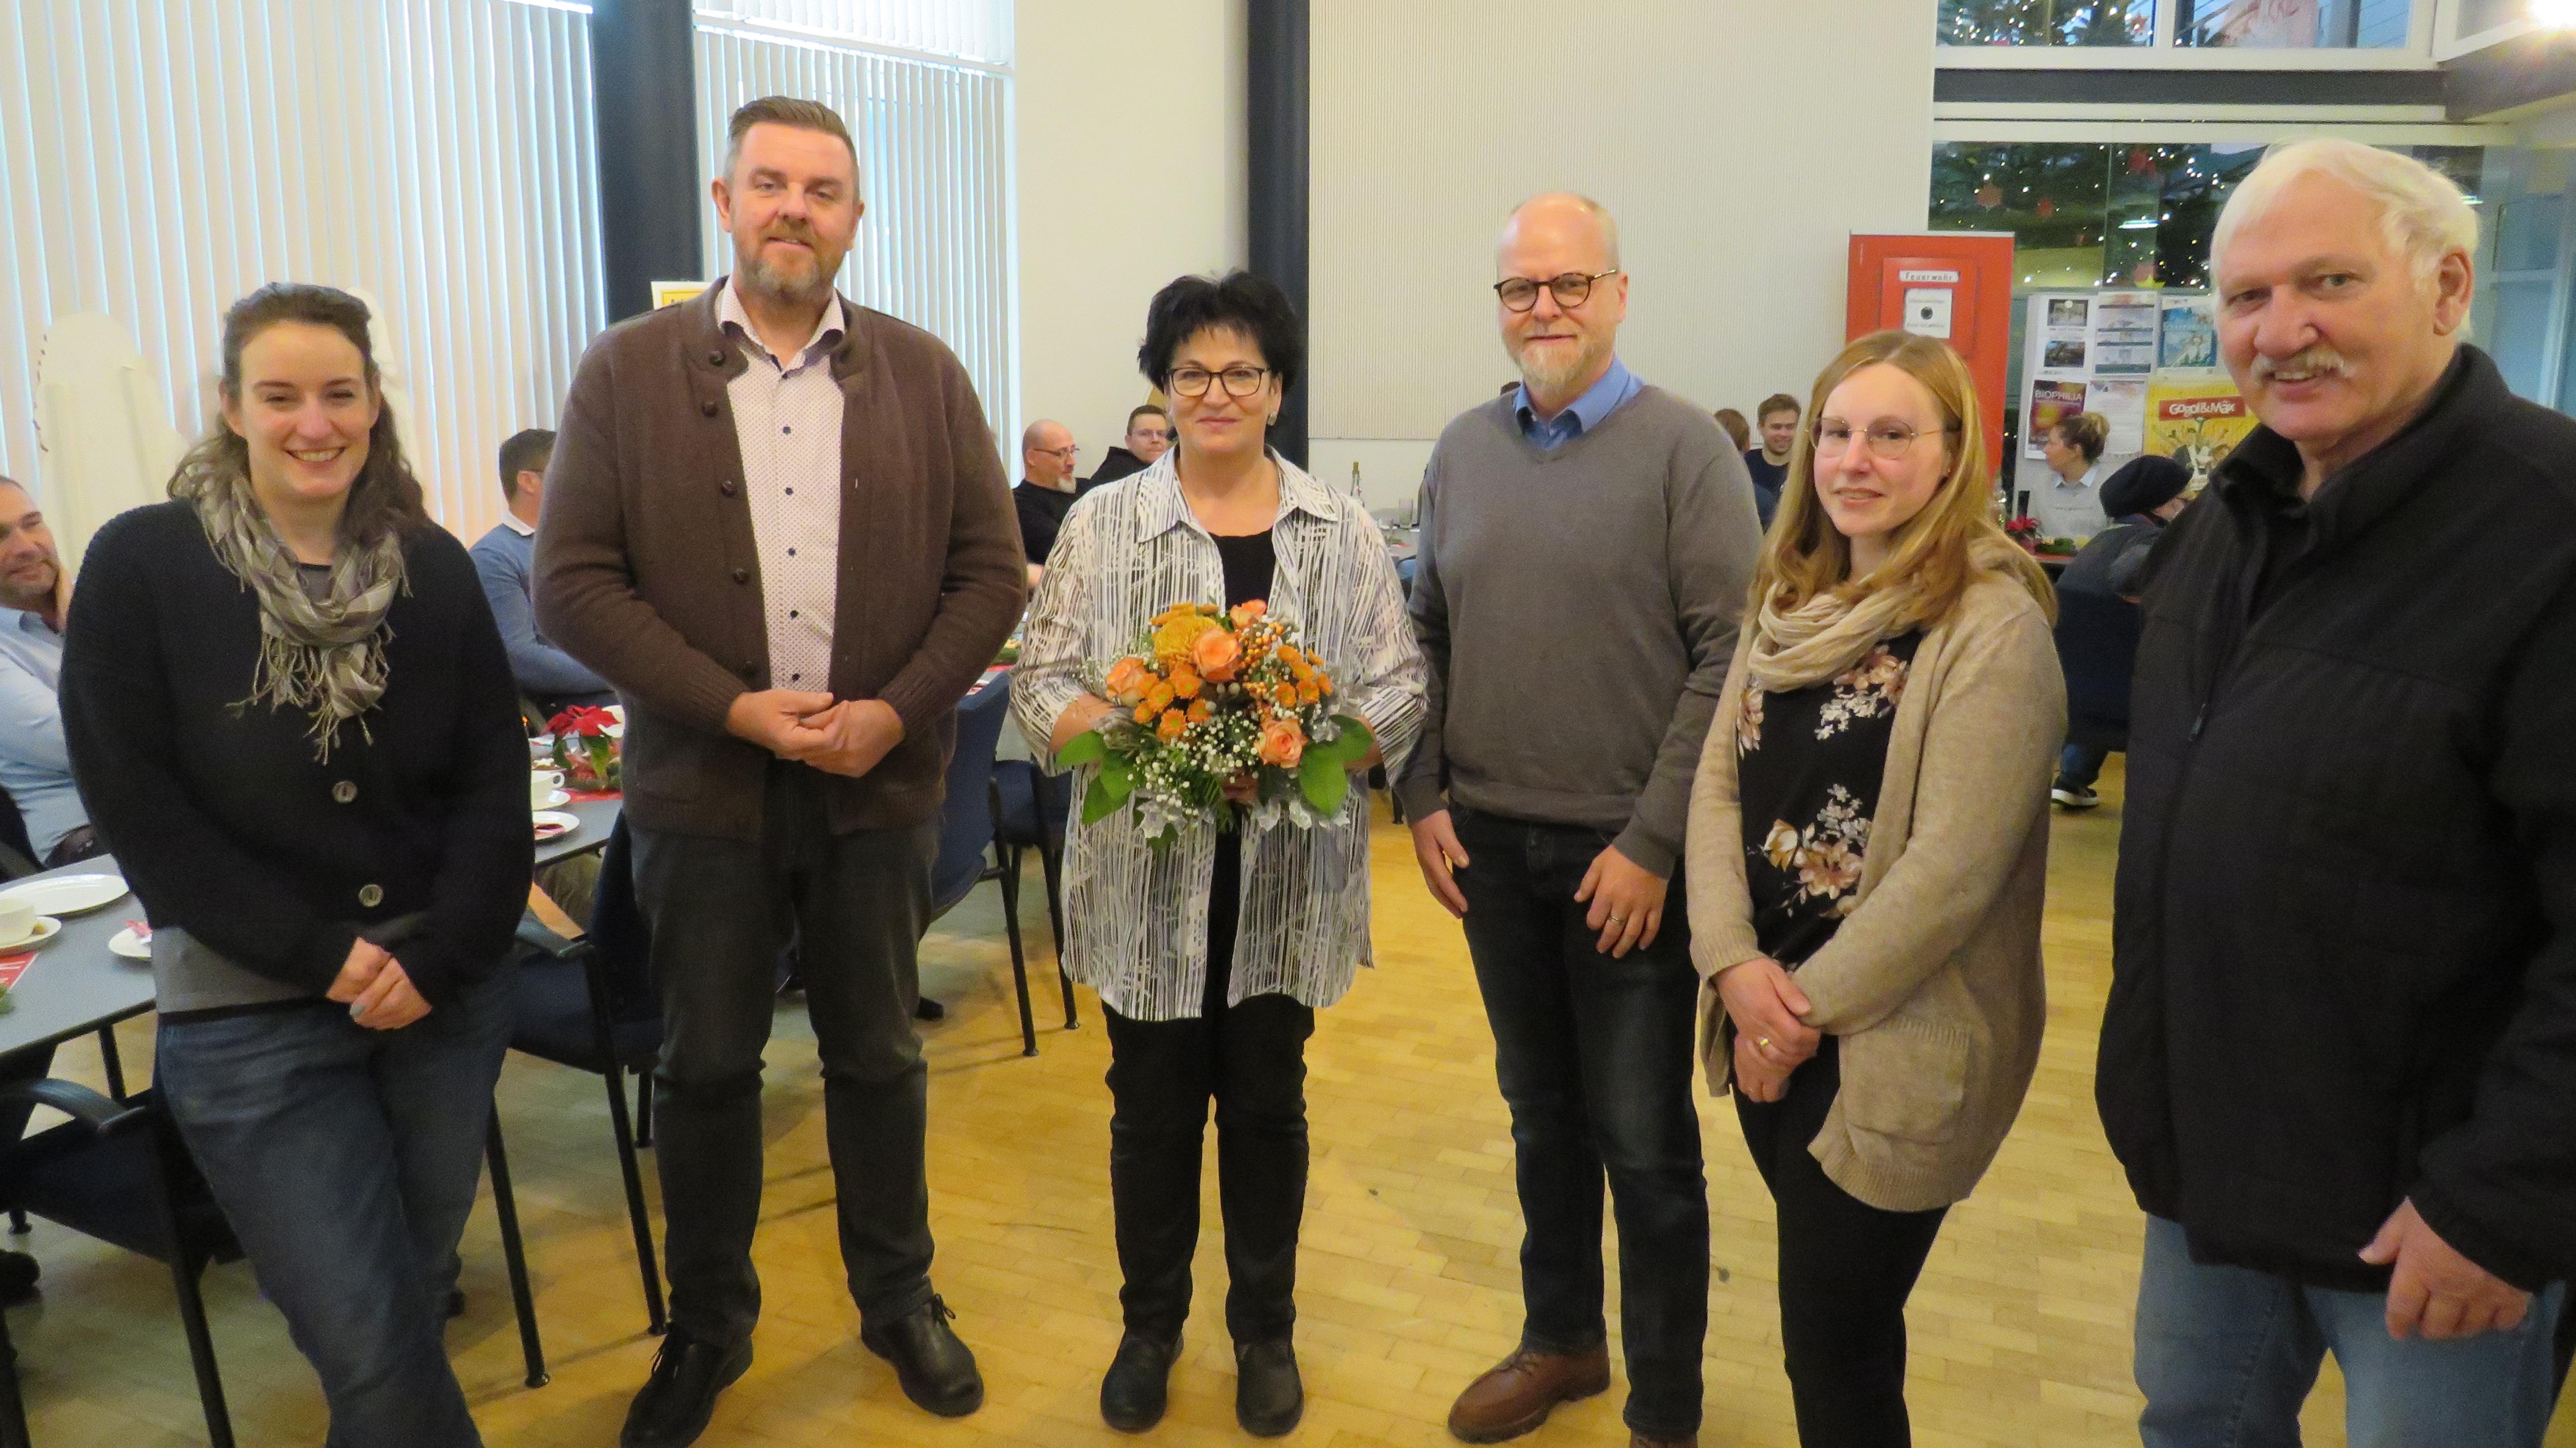 Foto (© Gemeinde Lehre): Gemeindebürgermeister Andreas Busch sowie zahlreiche Kolleginnen und Kollegen verabschieden sich von Anita Remus.